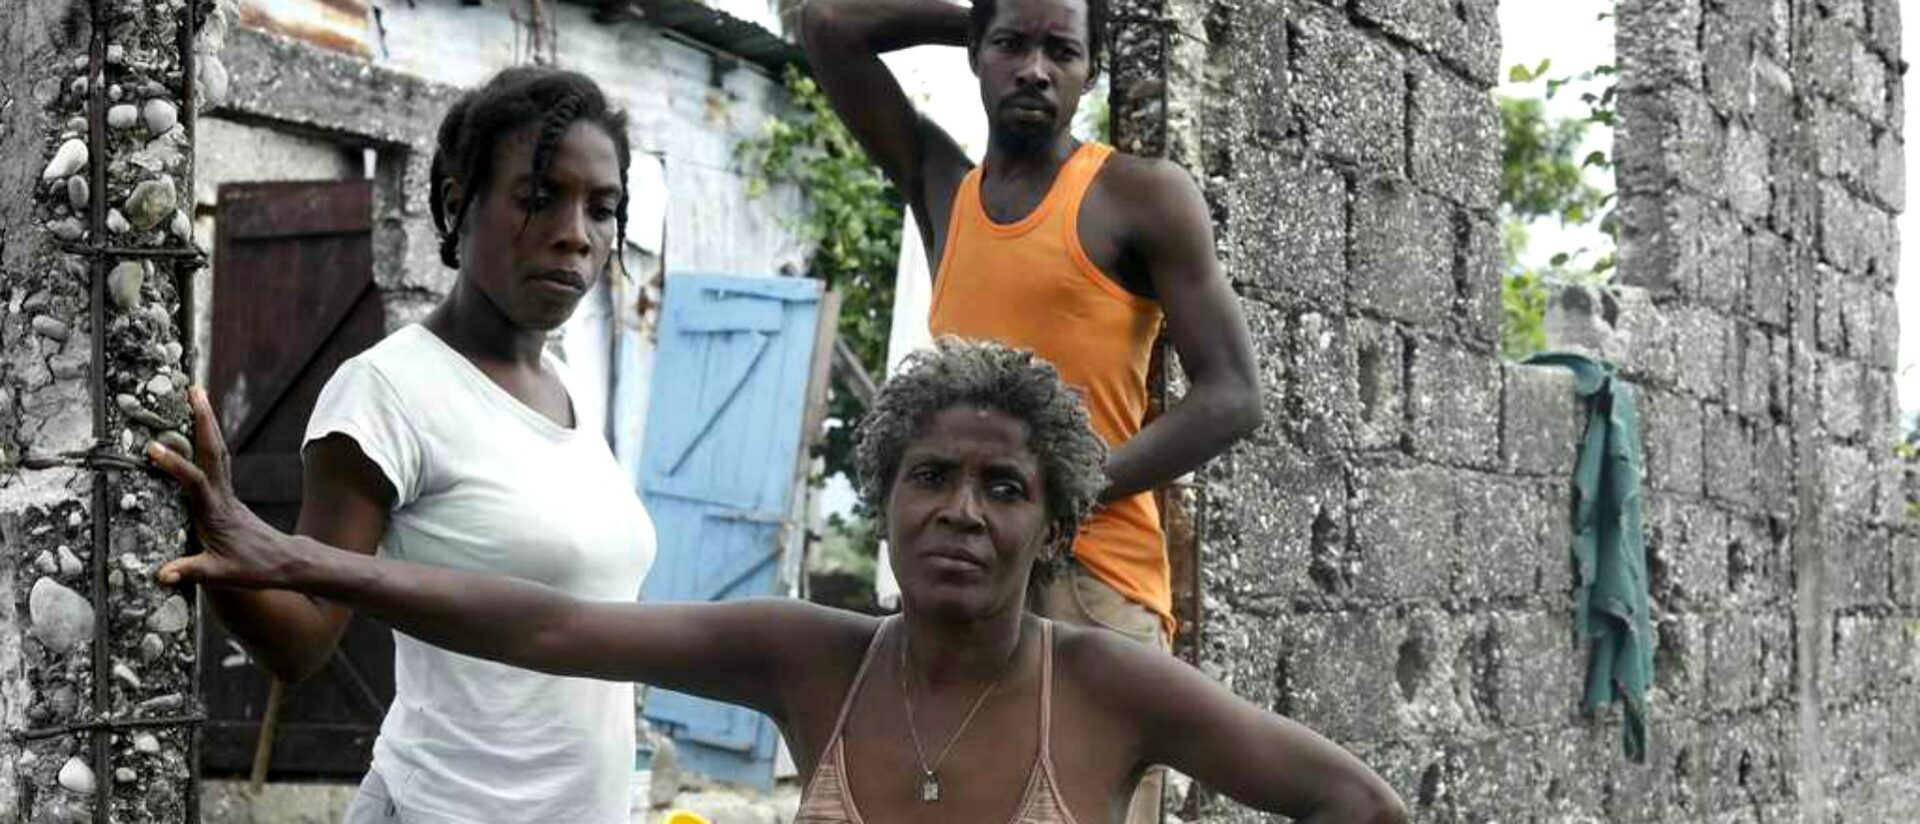 La misère augmente de façon effrayante en Haïti | © OCHA Christian Cricboom